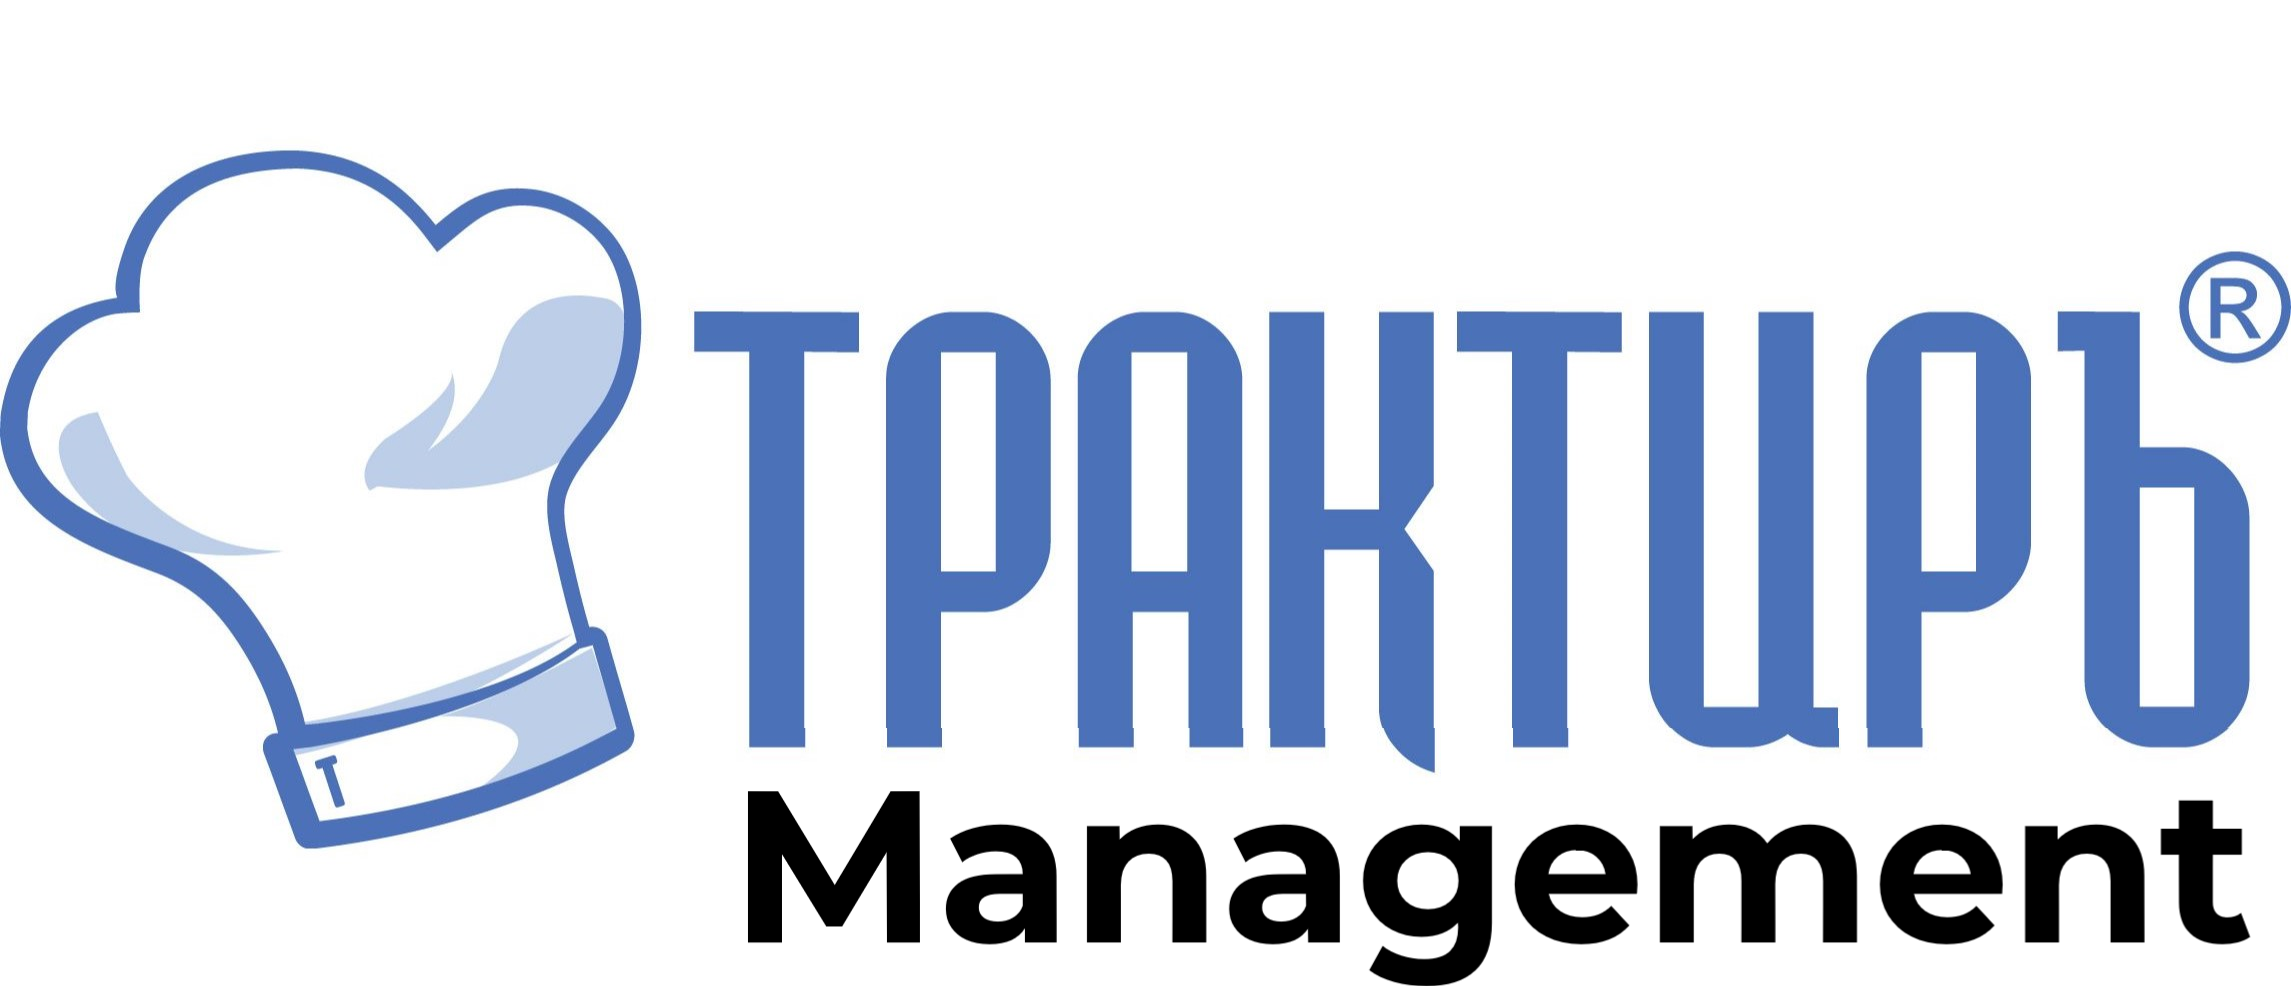 Трактиръ: Management в Челябинске